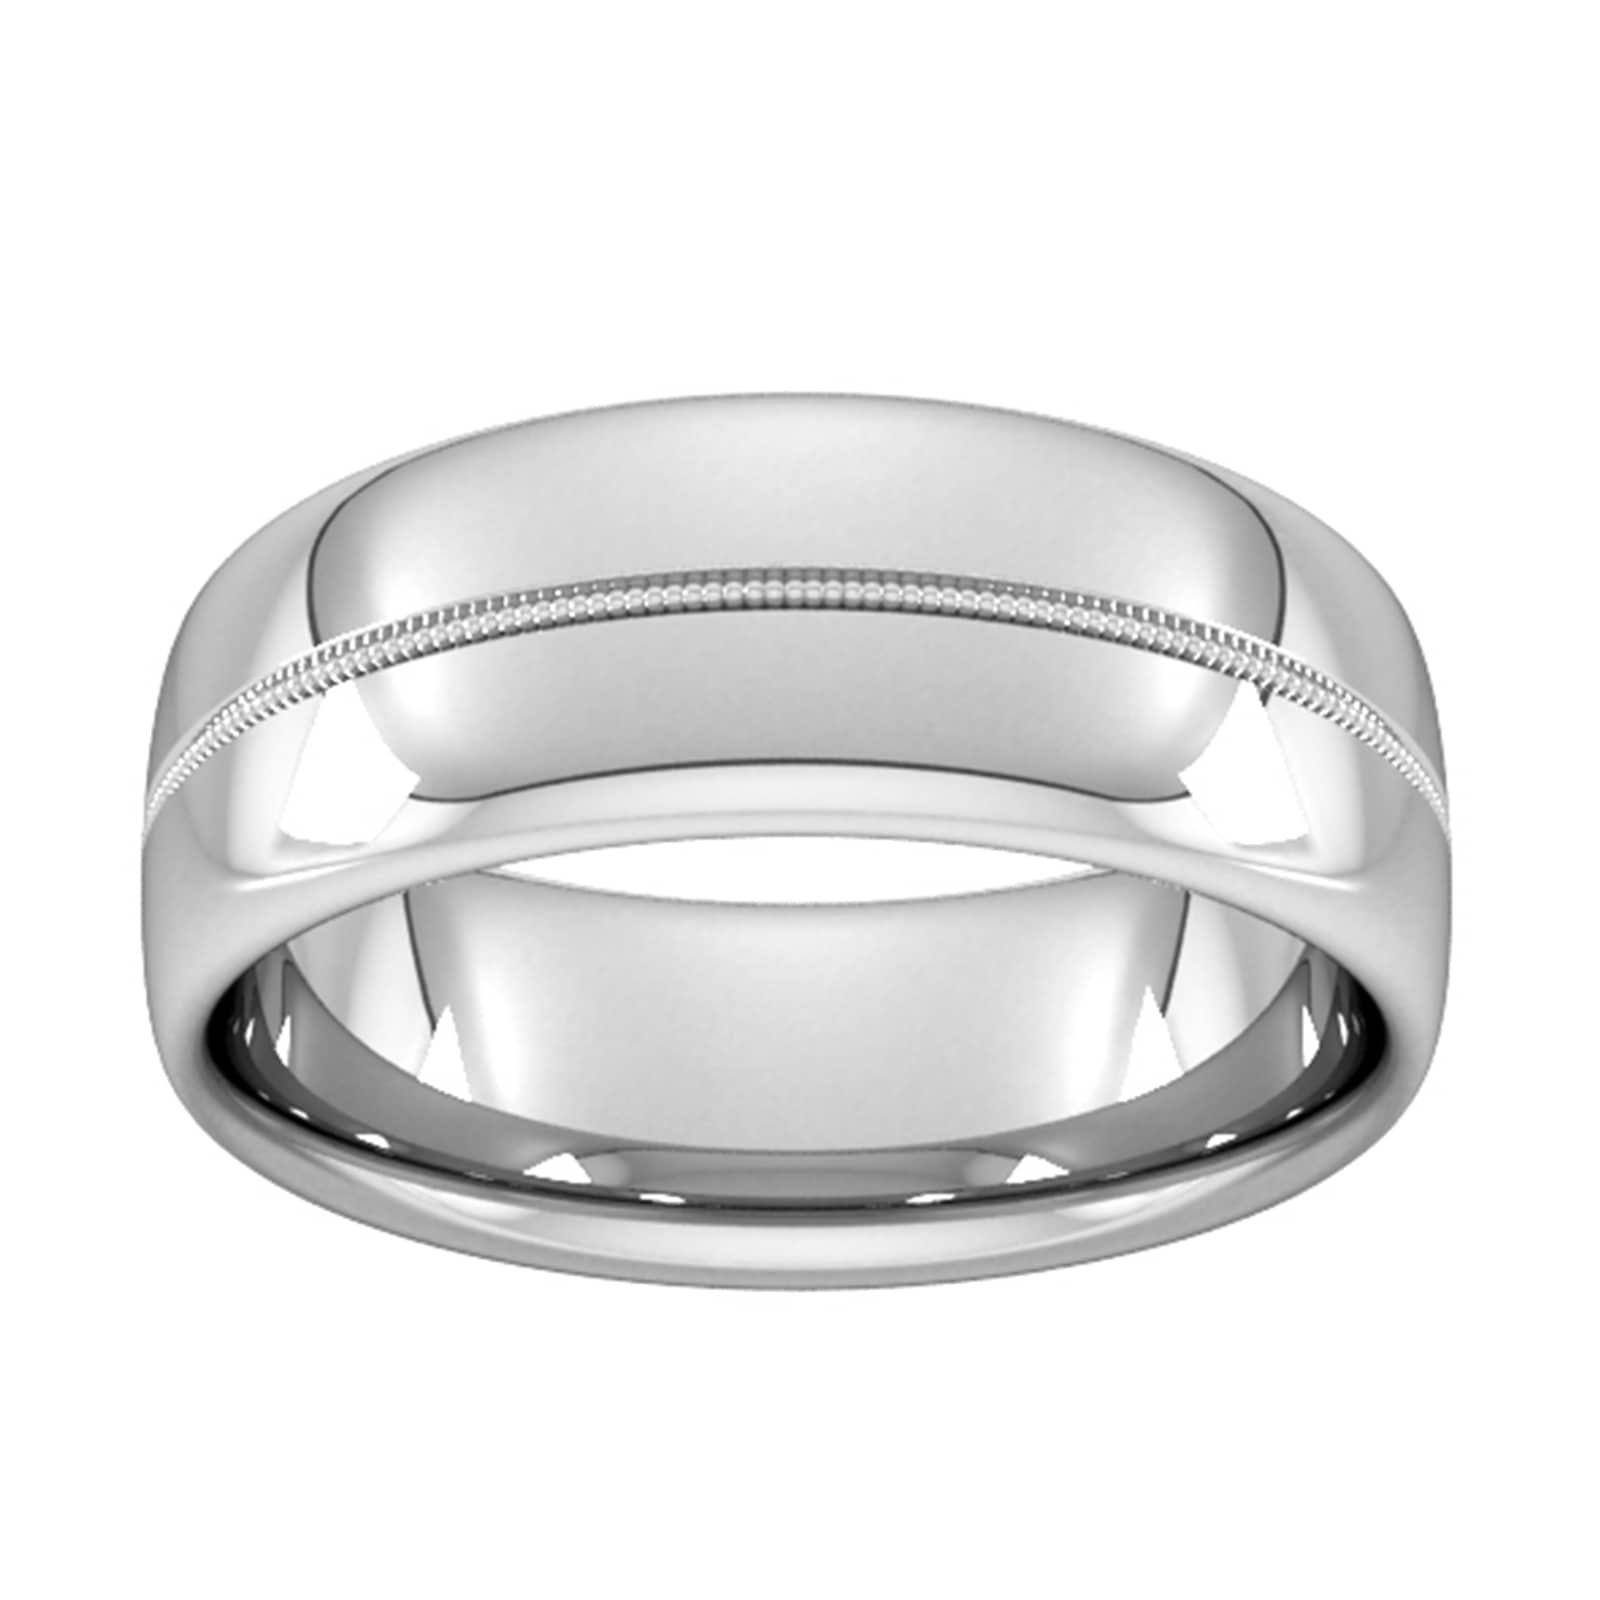 8mm Slight Court Standard Milgrain Centre Wedding Ring In 9 Carat White Gold - Ring Size K